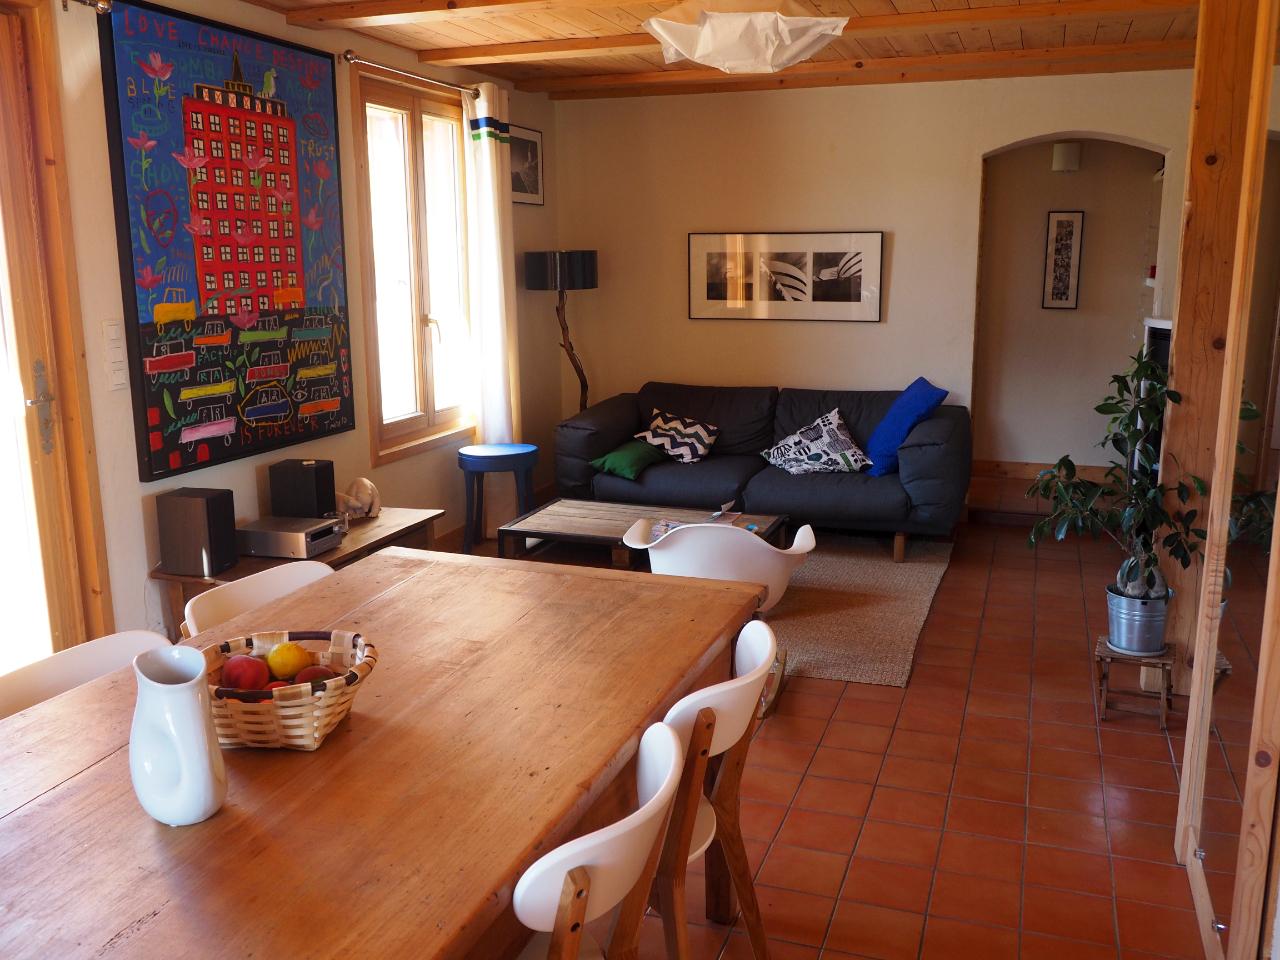 Hôte GreenGo: Maison esprit chalet en Chartreuse (avec chat) - Image 9